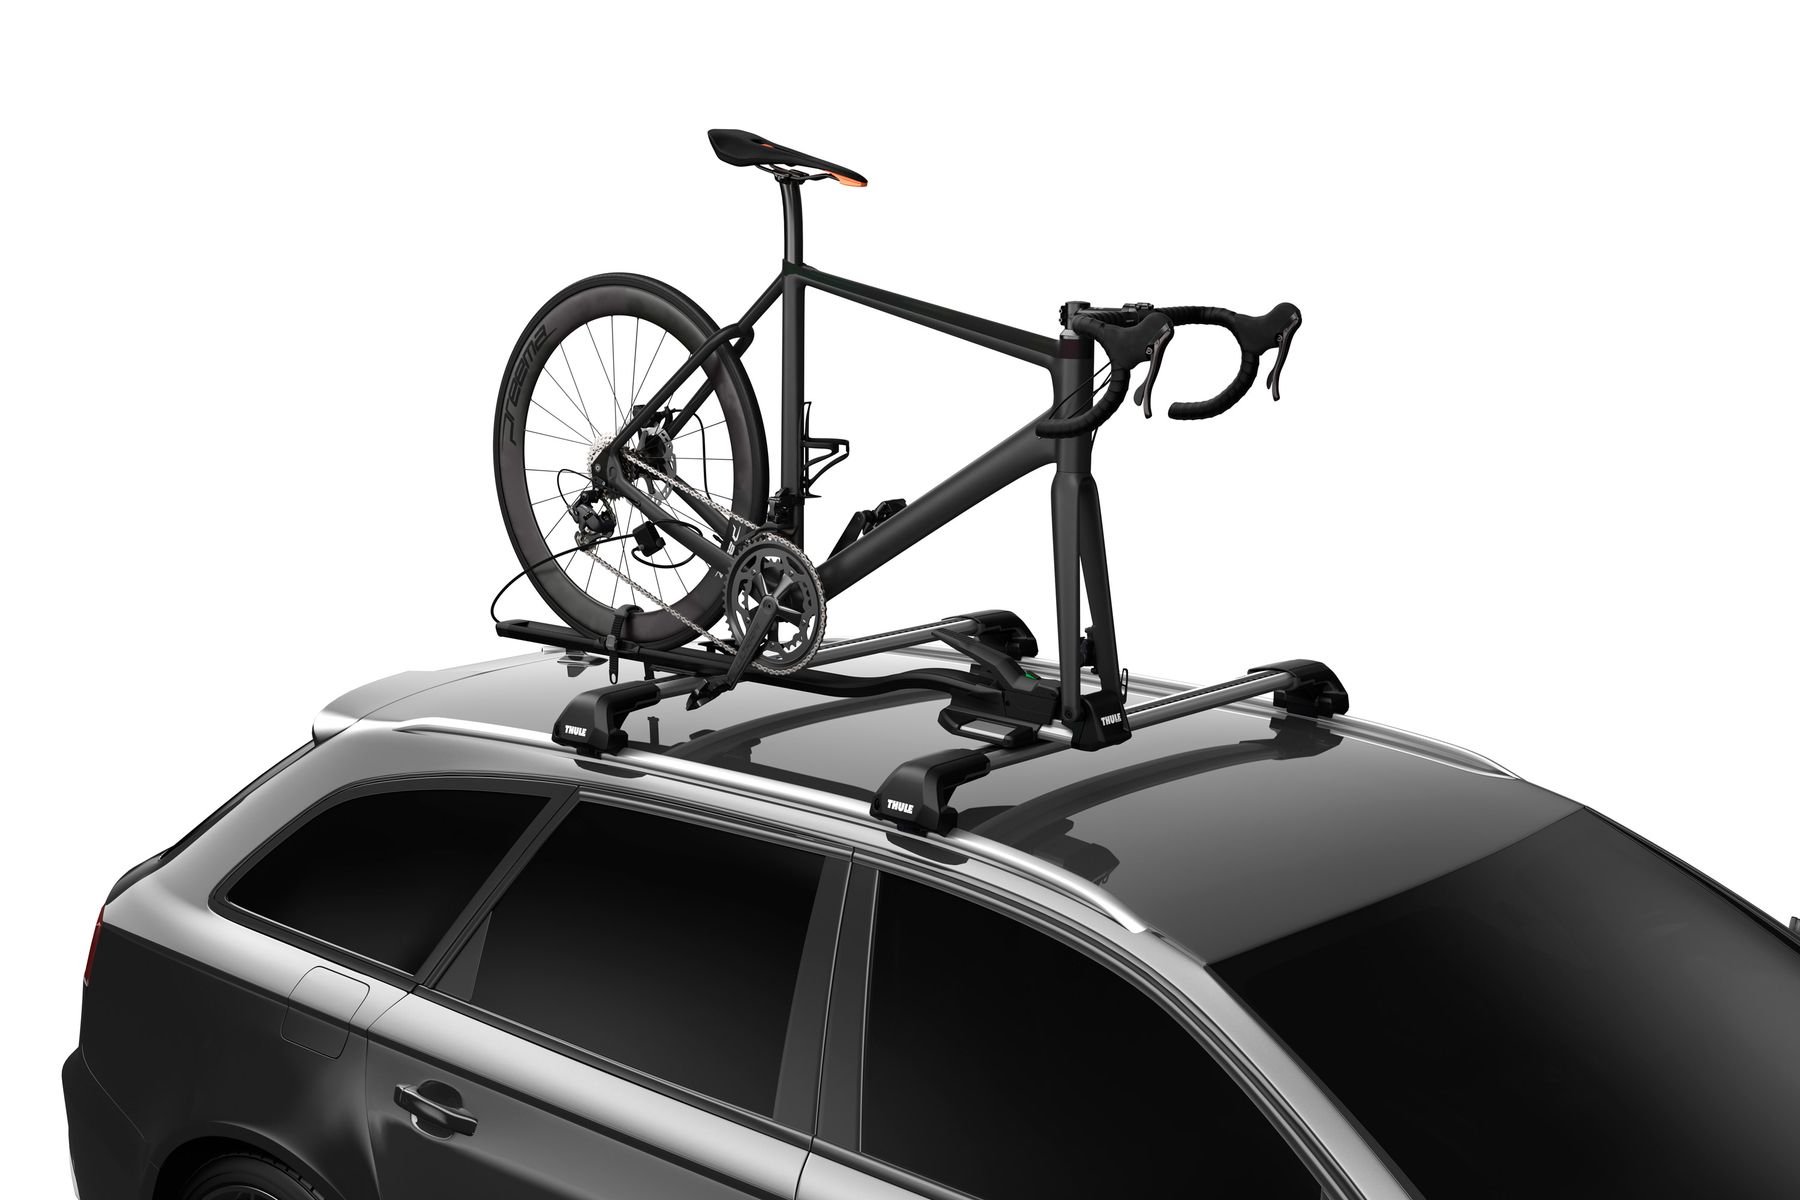 Car Roof Rack Bike Carrier Bicycle Travel Rooftop Rack Mount Holder Kit Set 